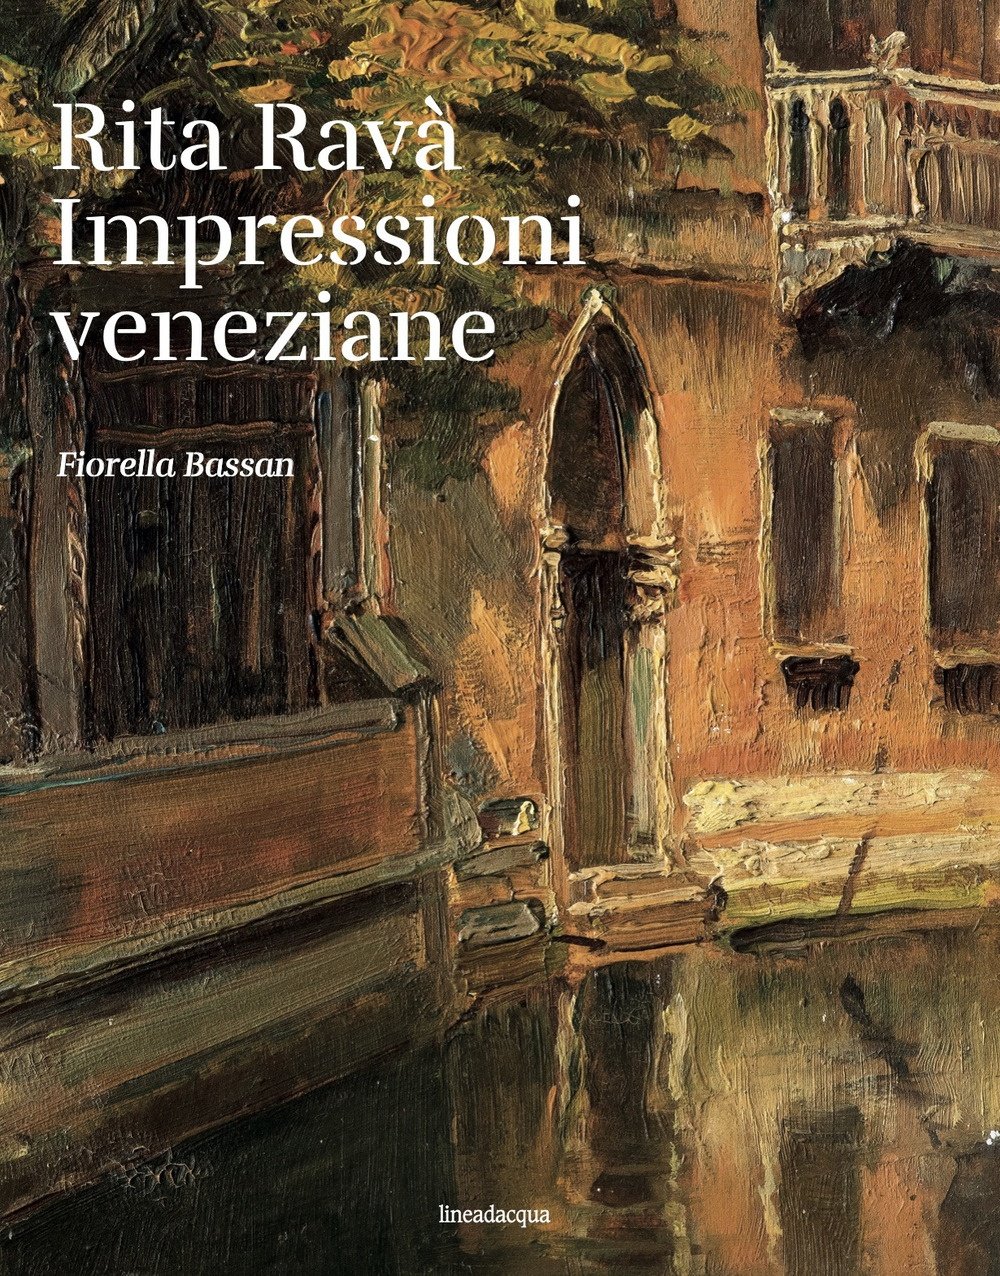 Rita Ravà. Impressioni veneziane, Venezia, Lineadacqua Edizioni, 2022